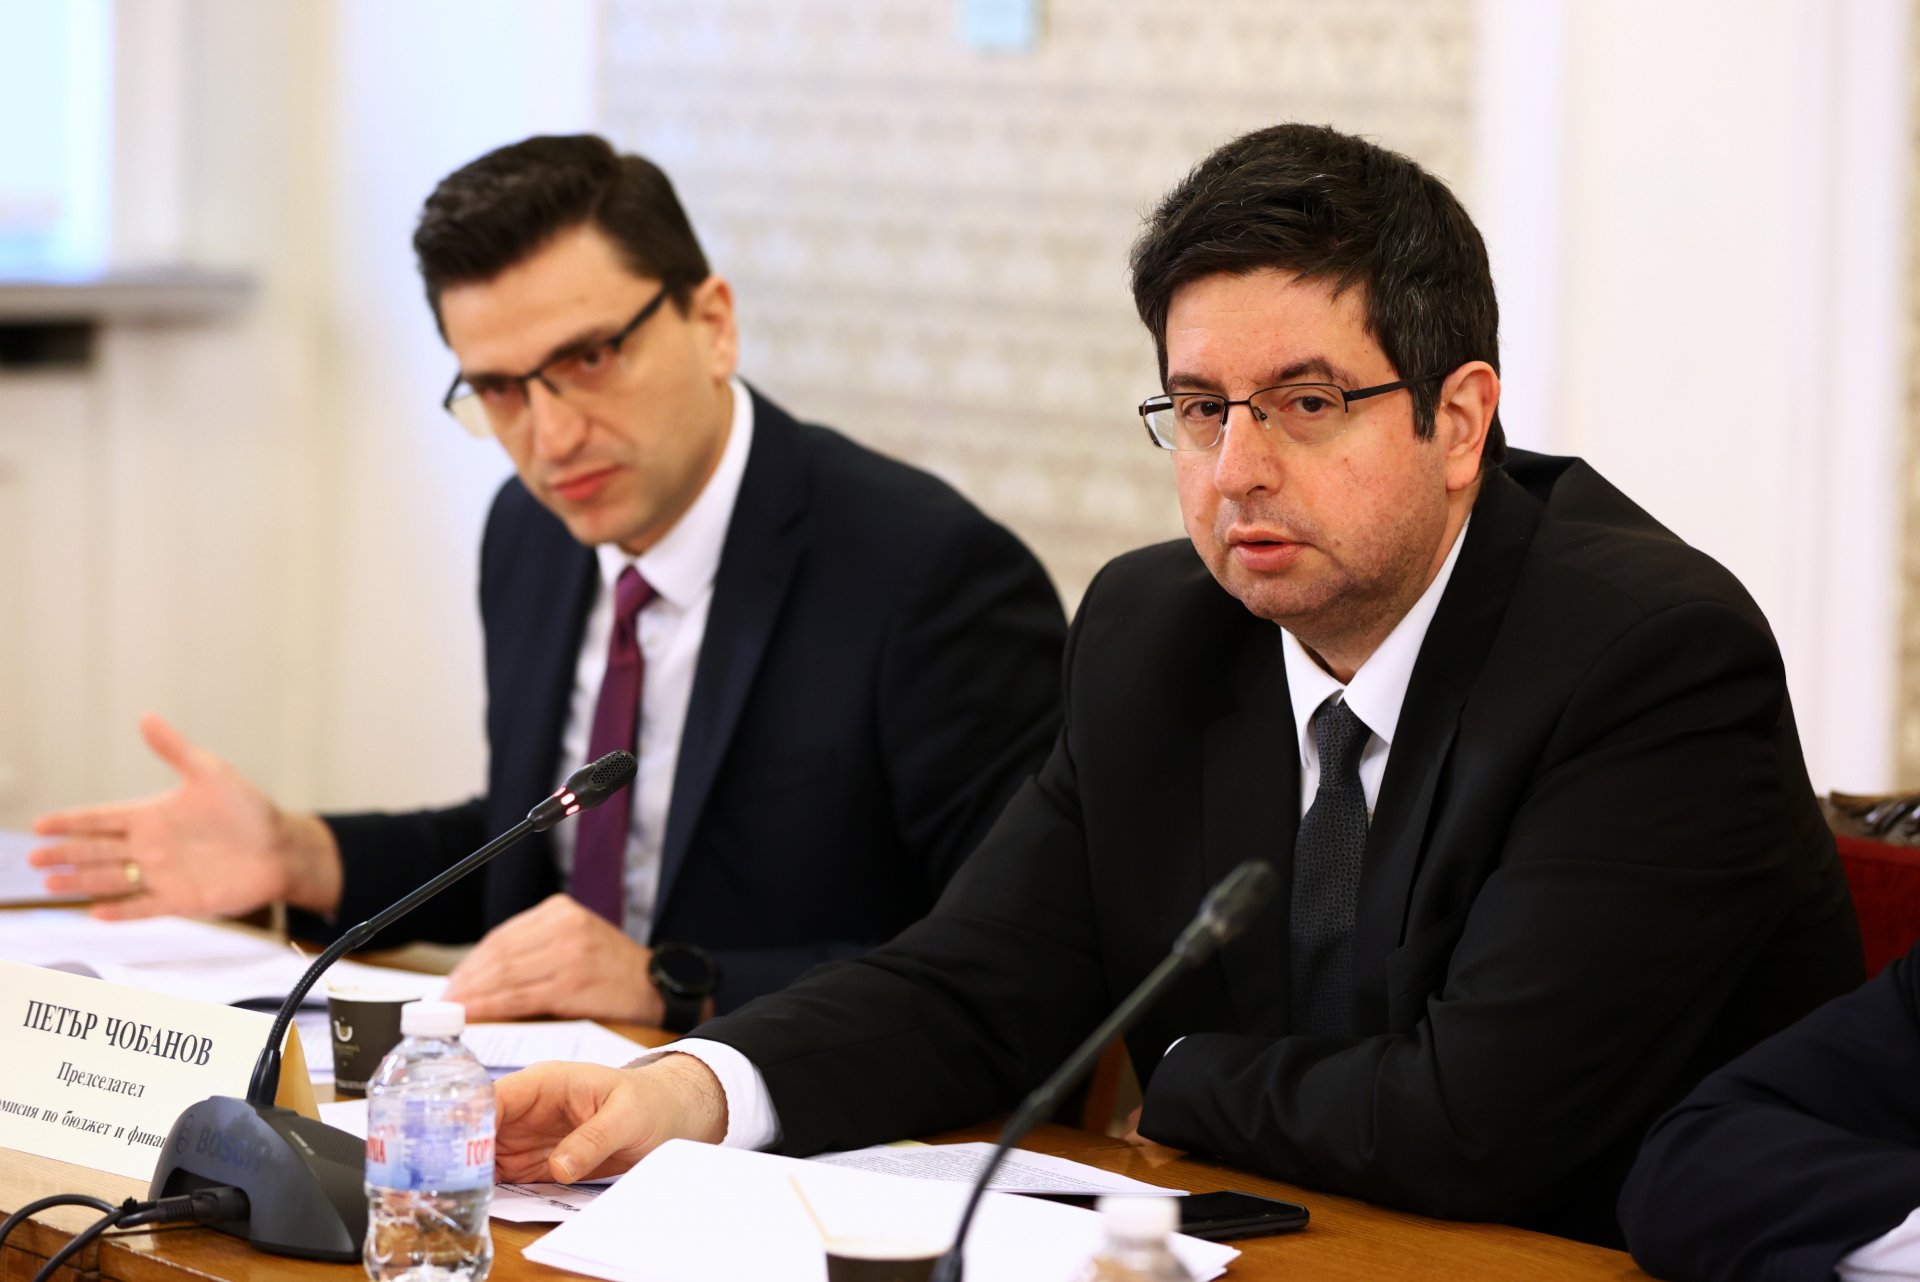 Венко Сабрутев, зам.-председател на бюджетната комисия, и Петър Чобанов (дясно), председател на комисията по време на заседанието й във вторник, 29 ноември